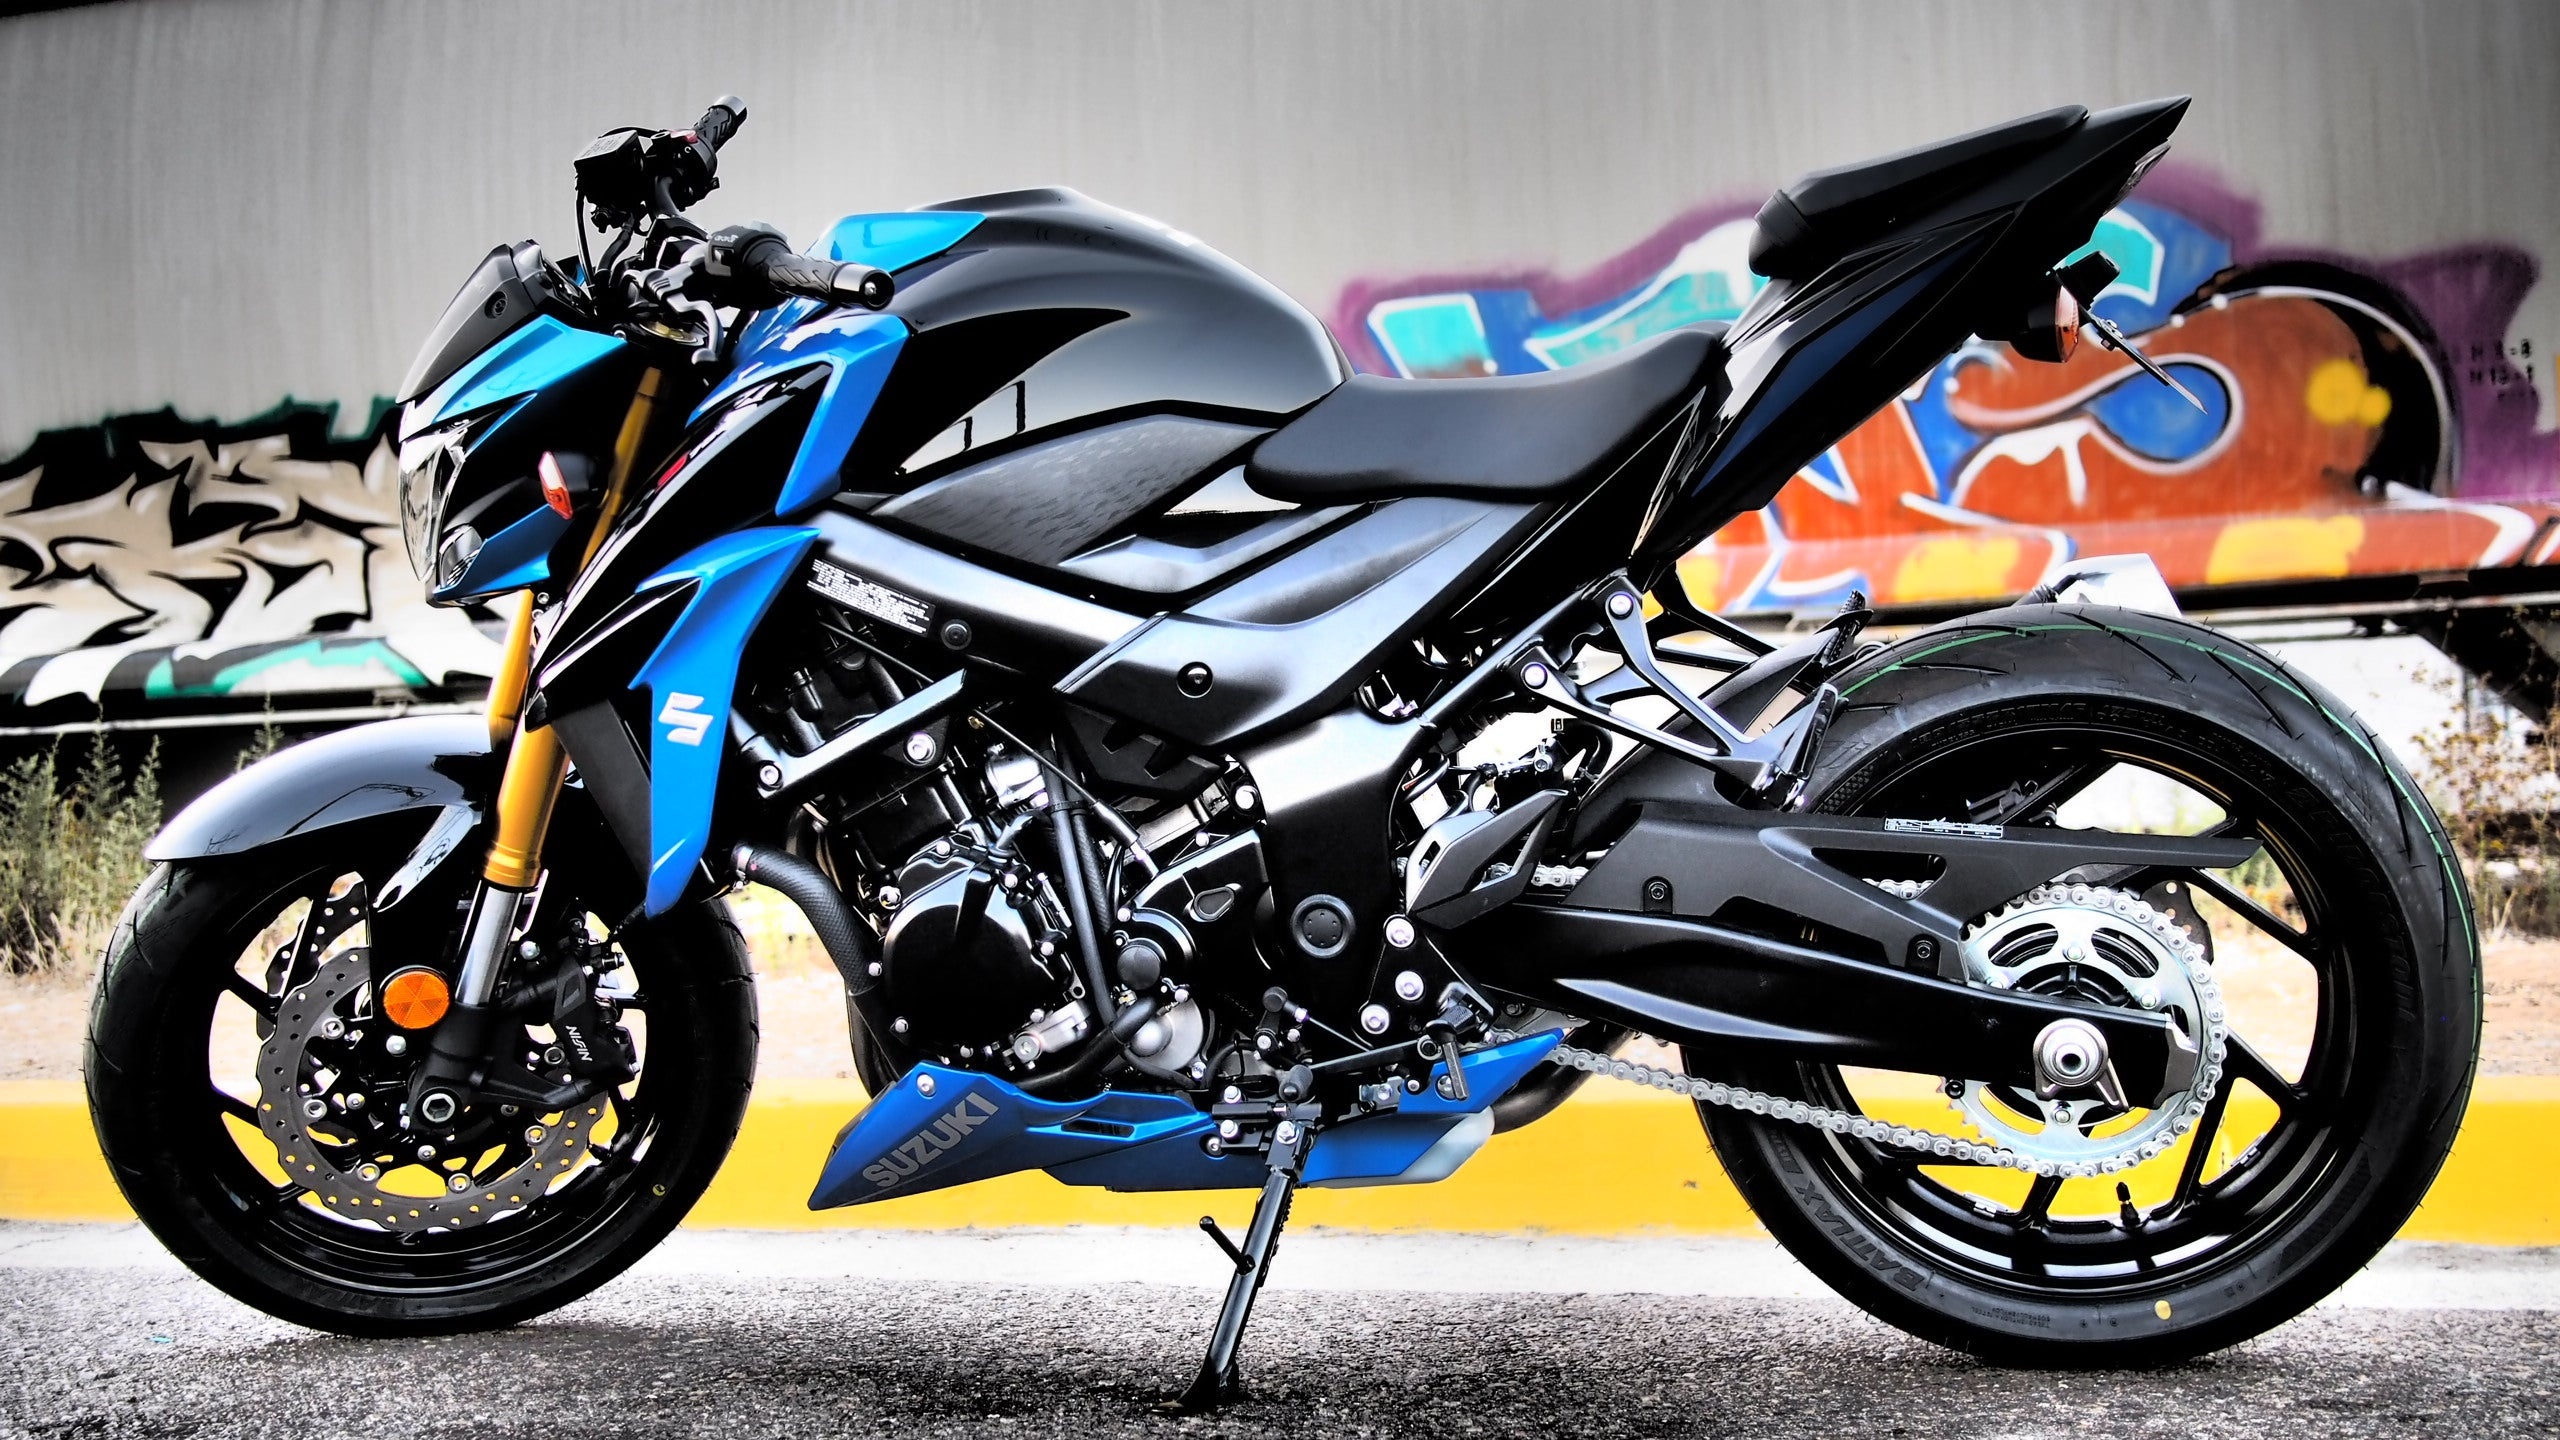 Suzuki GSX-S750, Free download images, Sport motorcycle, Urban ride, 2560x1440 HD Desktop